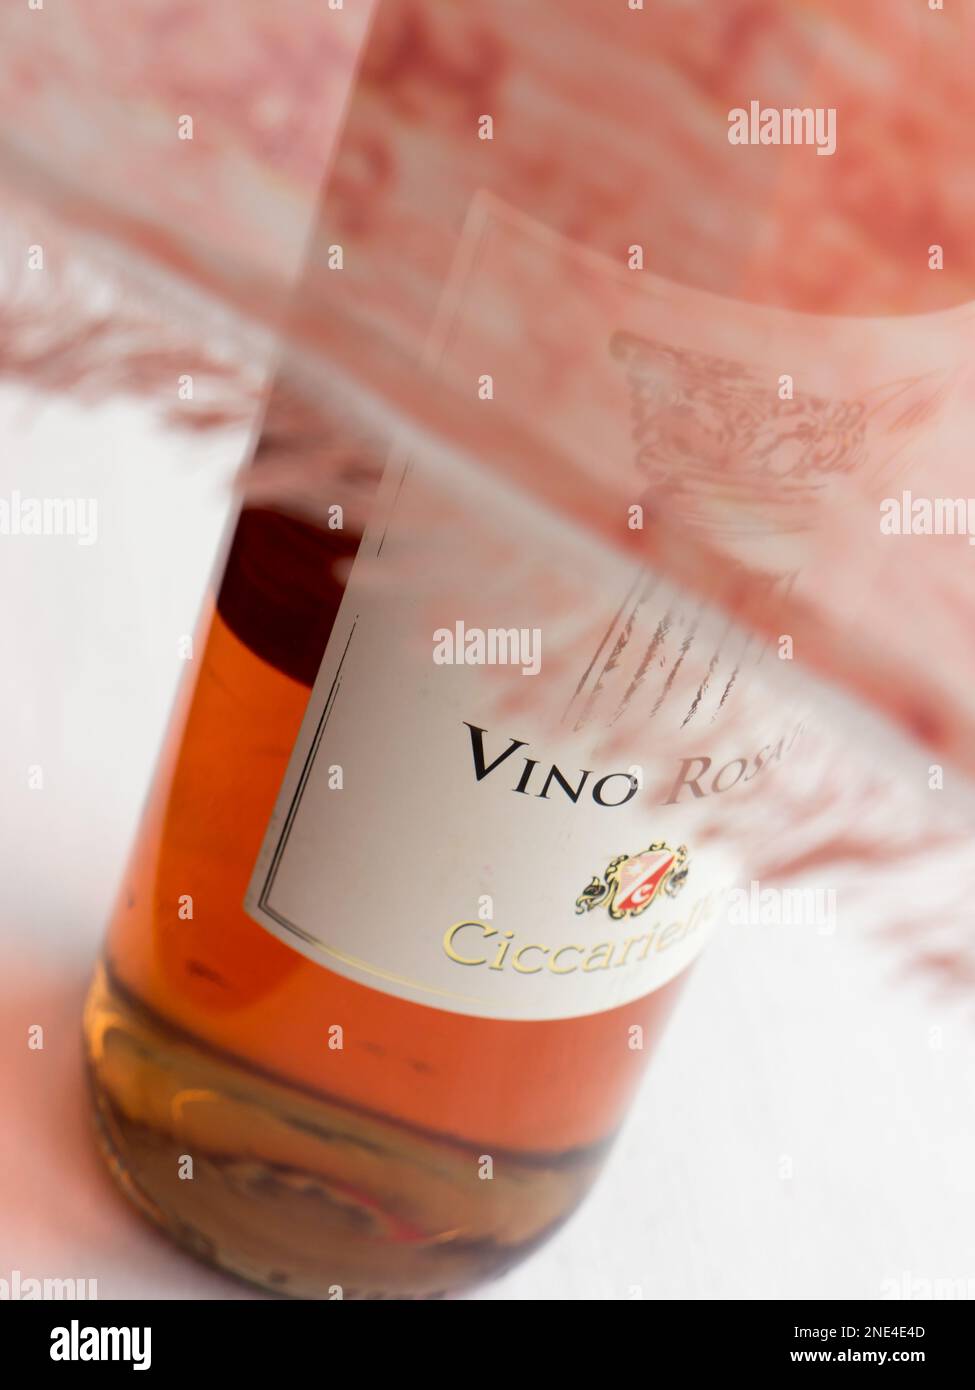 Wine Colli Perini Vino Rosato. 2019. Stock Photo